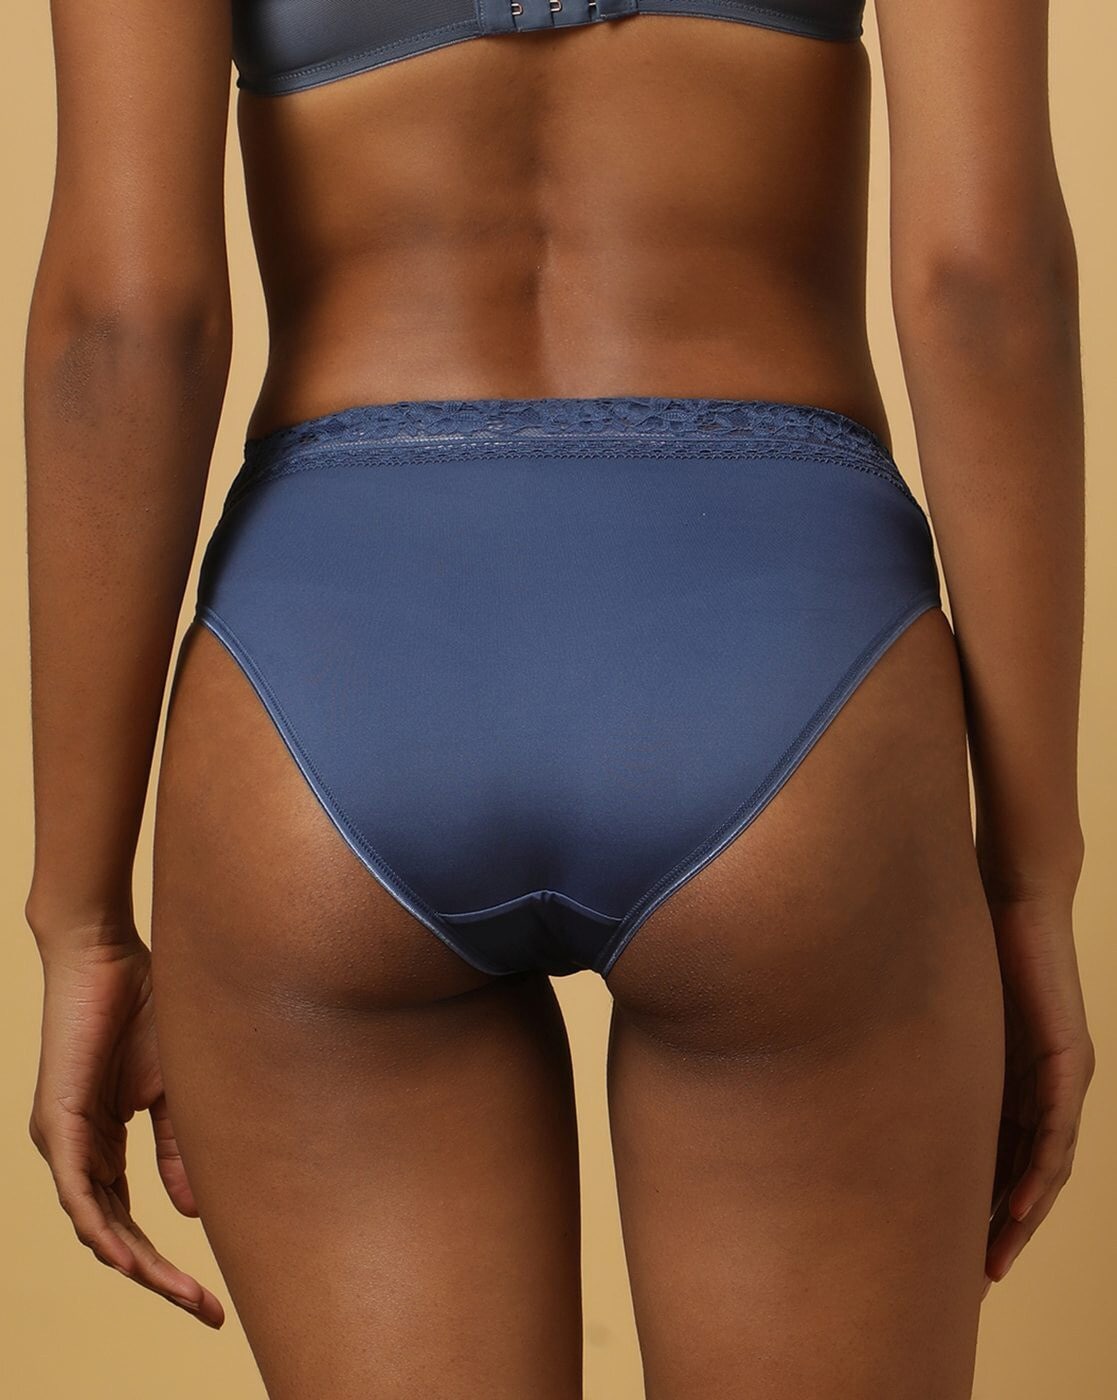 AAOMASSR 5 Pack Women's High Waisted Cotton Underwear No Muffin